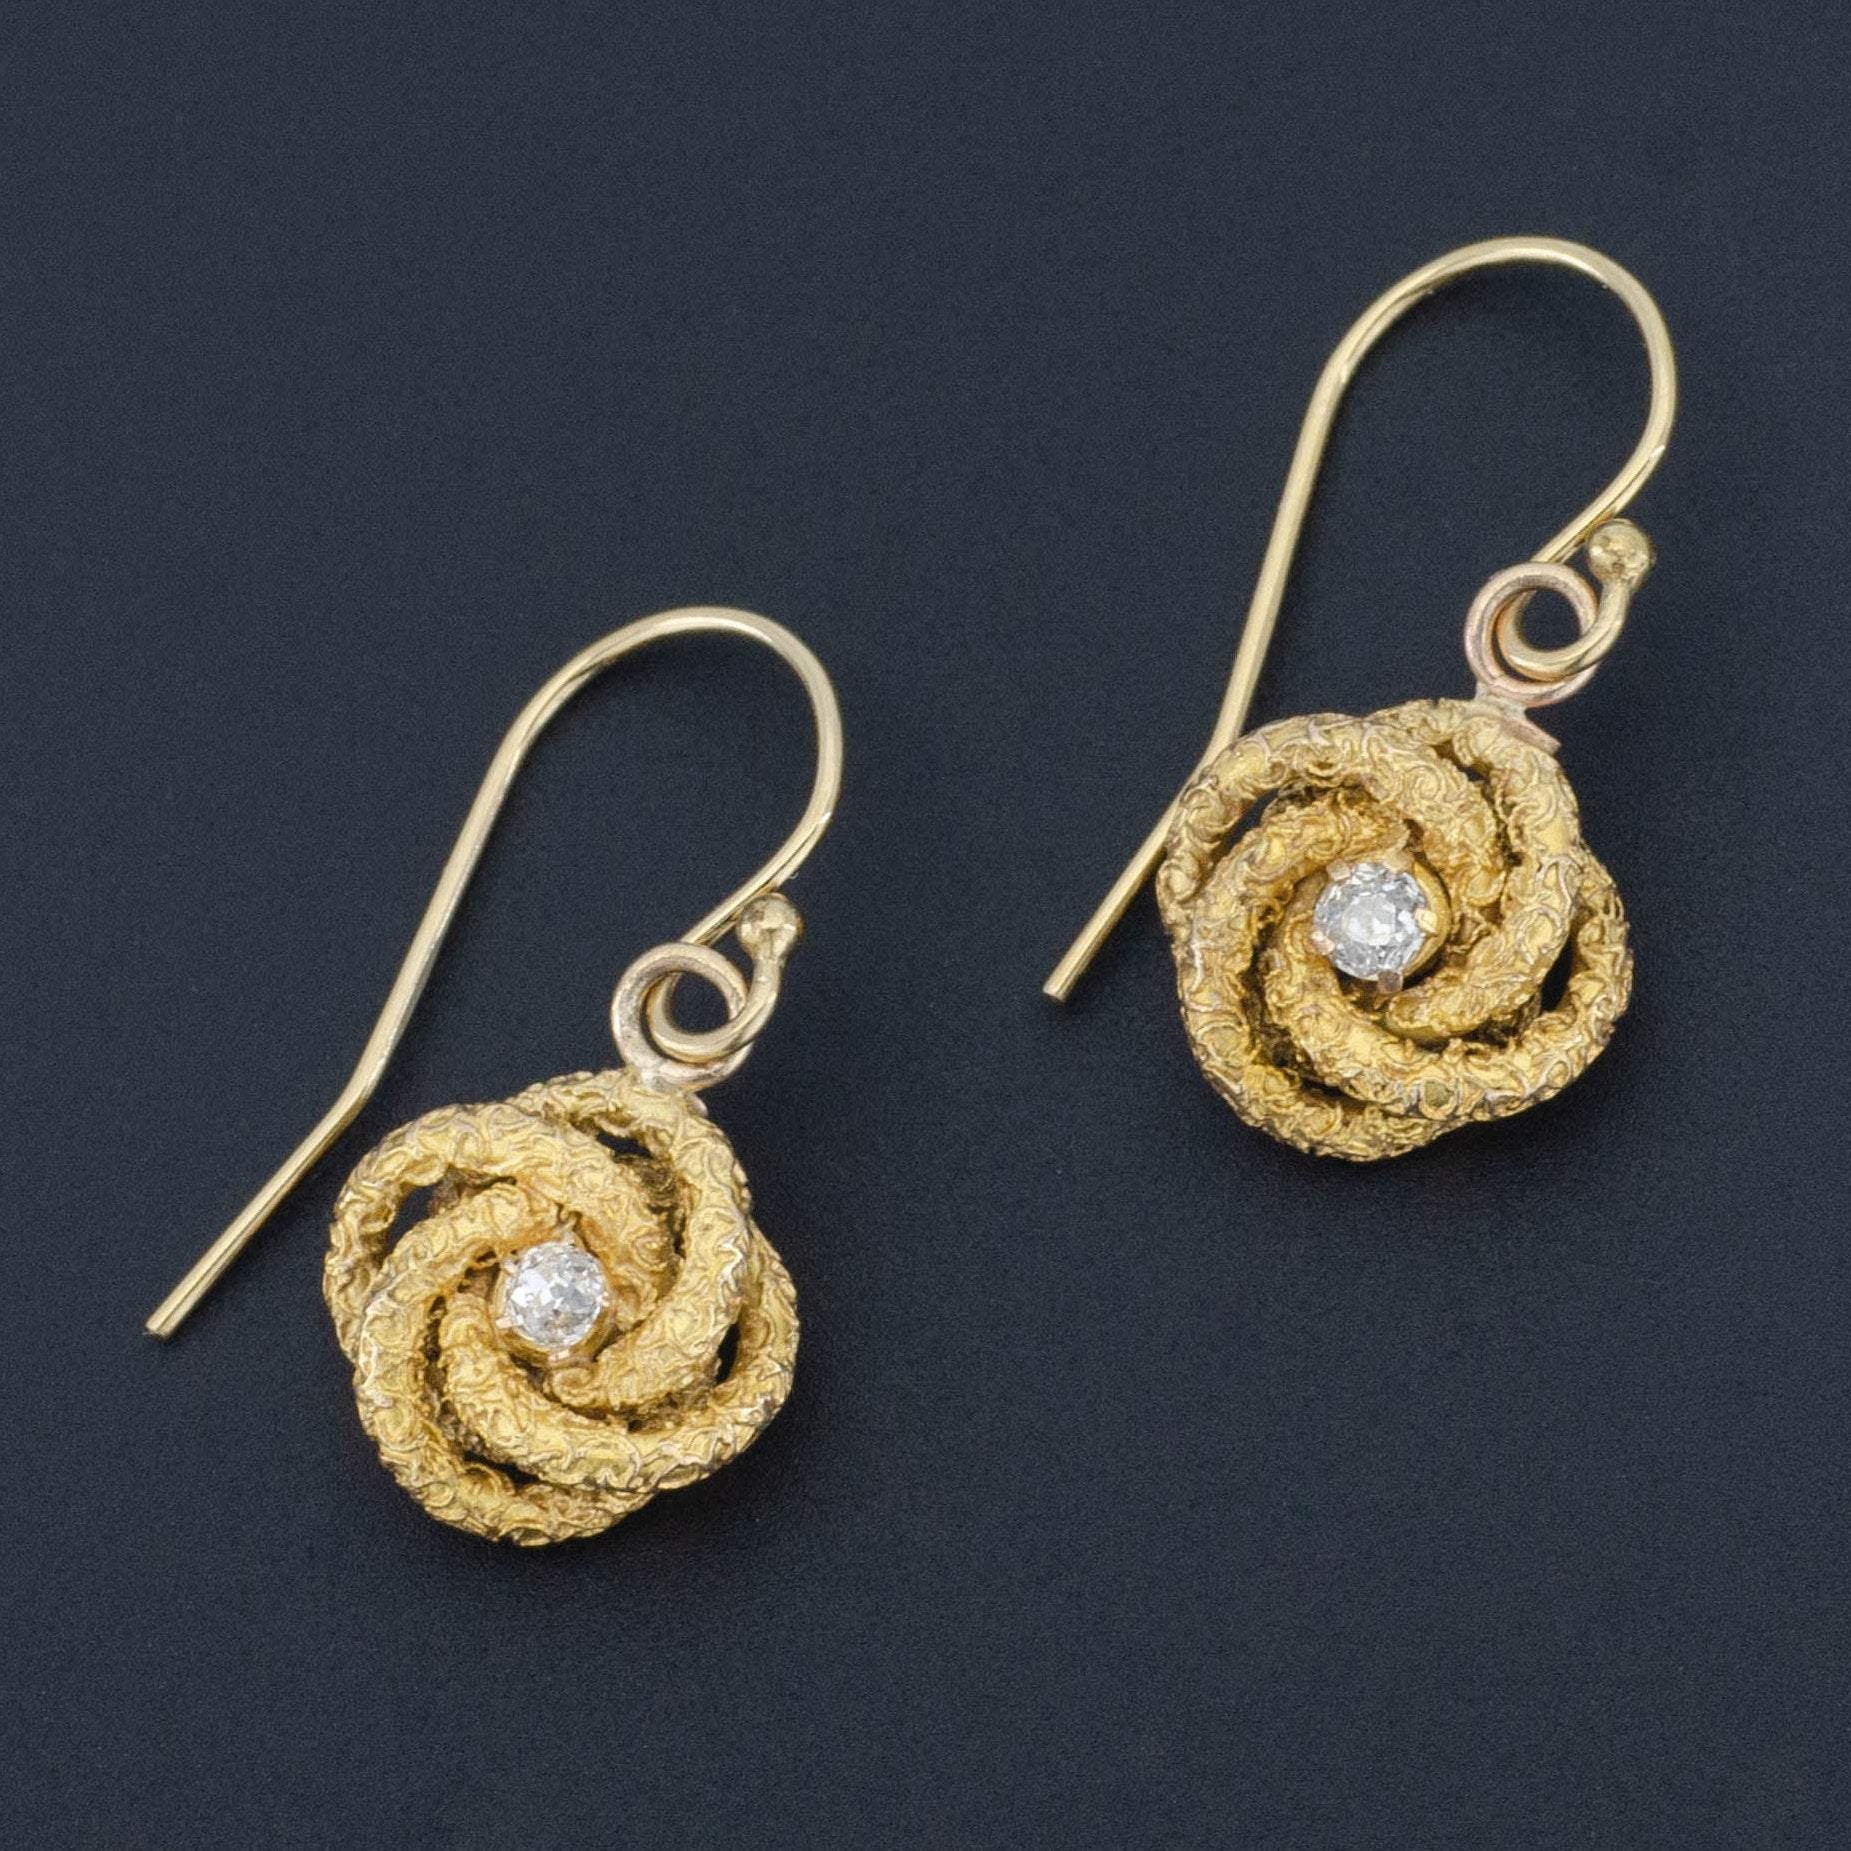 Love Knot Earrings | Antique Love Knot Earrings | 14k Gold Earrings | Gold & Diamond Earrings | Romantic Jewelry